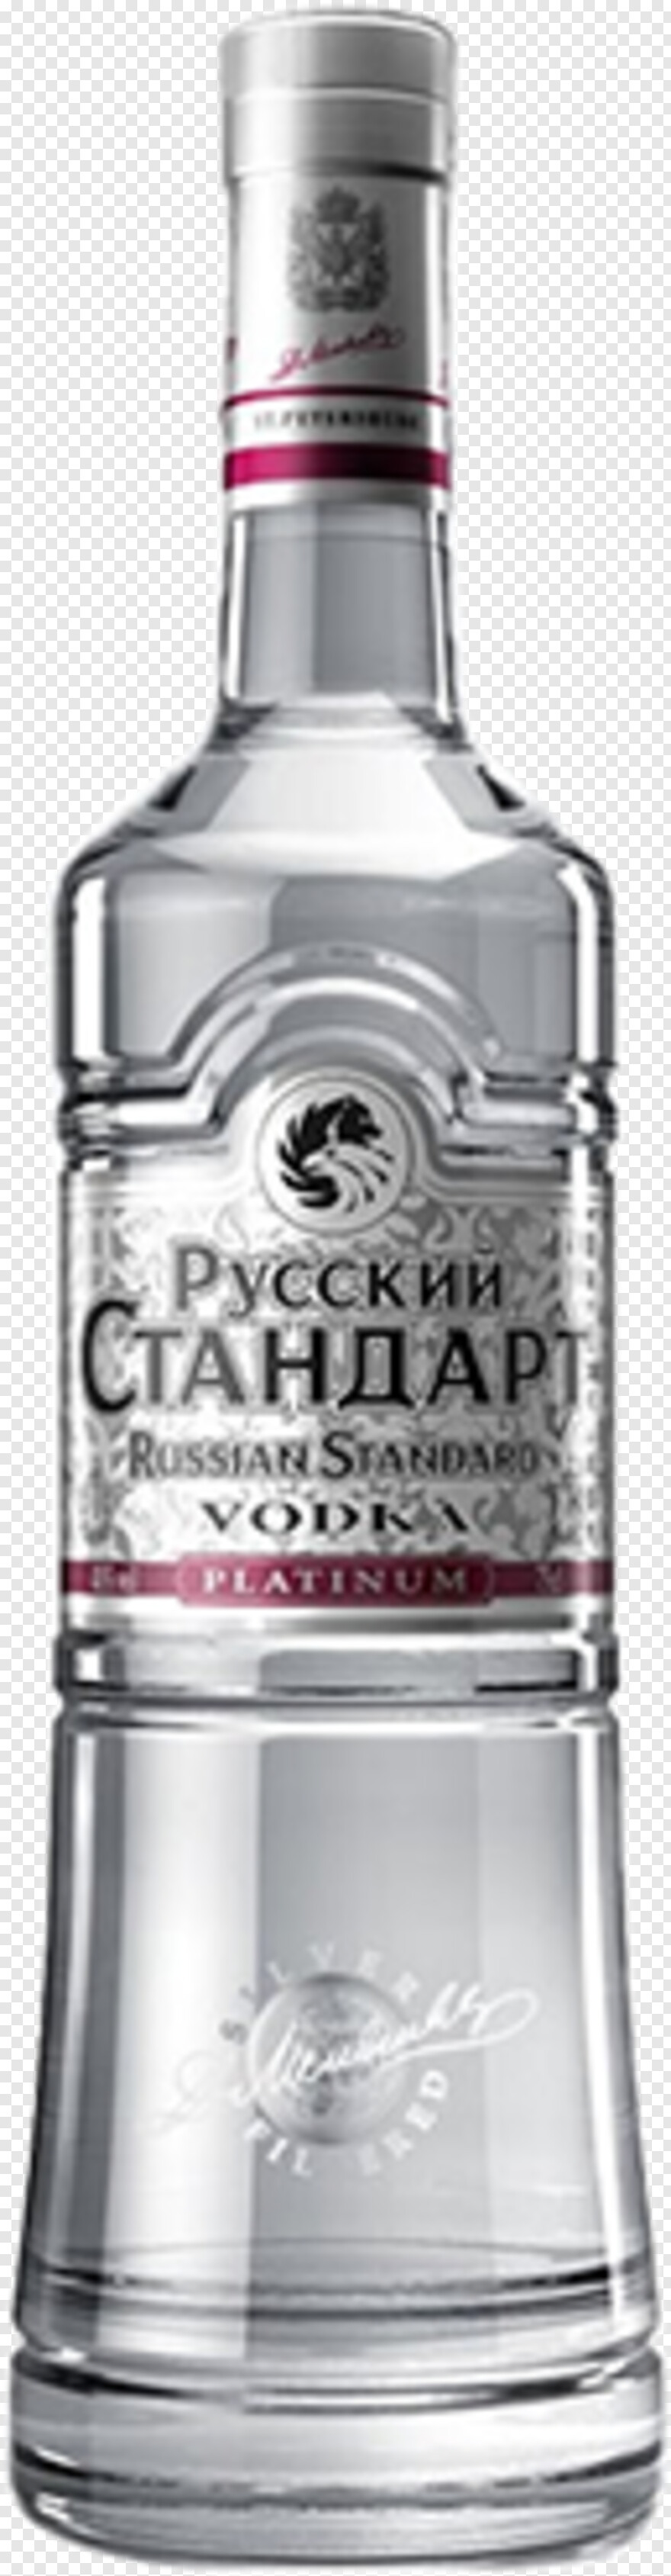 vodka # 651440